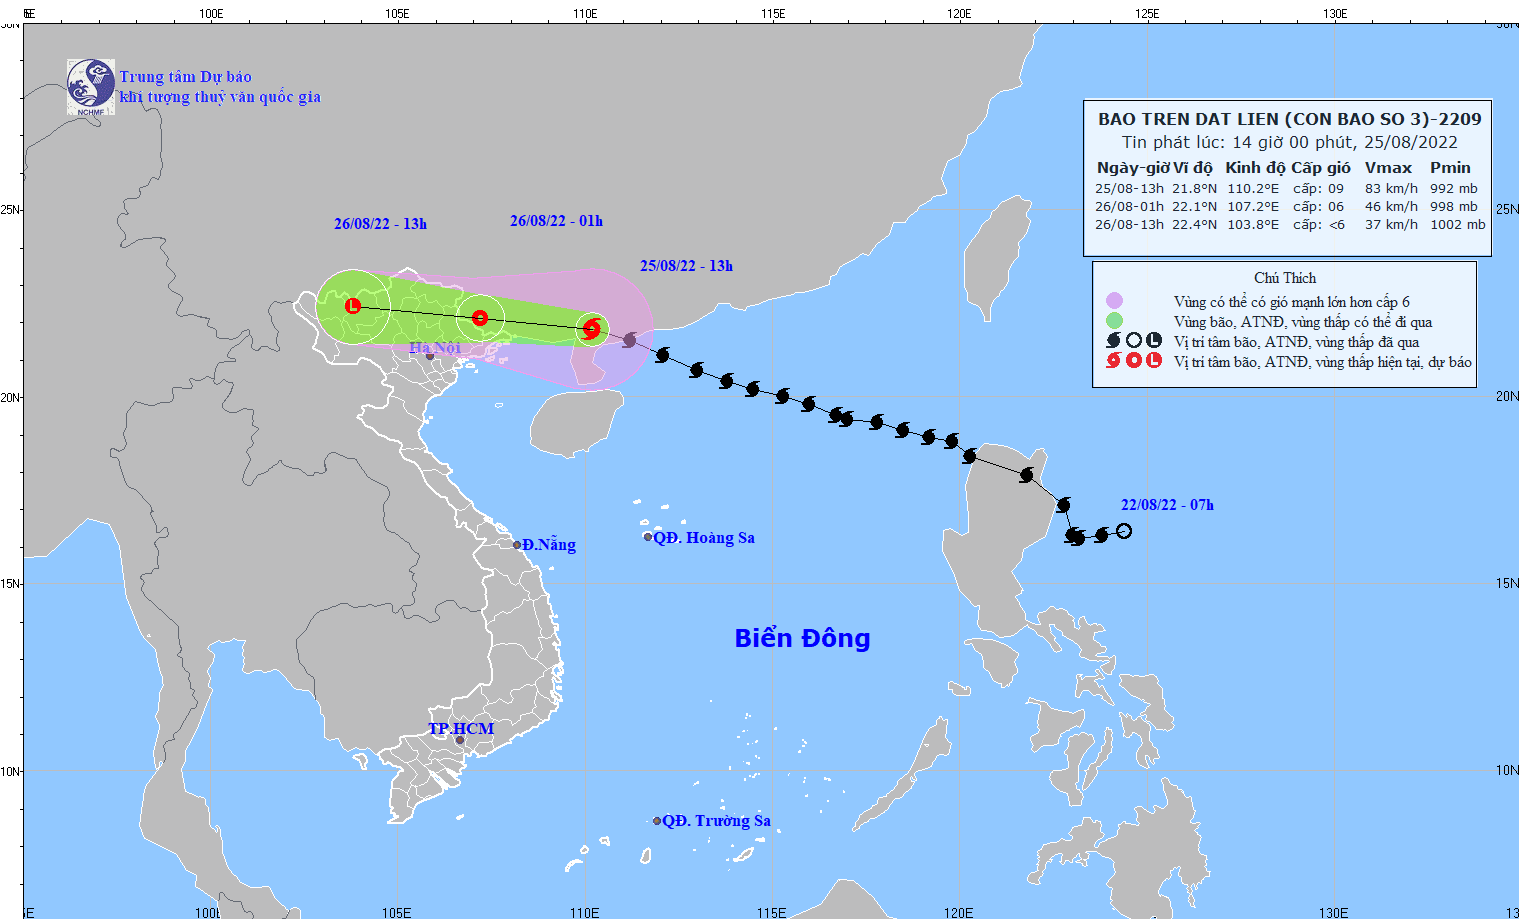 Bão số 3 đổ bộ vào Trung Quốc, hoàn lưu bão gây gió giật cấp 7 ở Bạch Long Vĩ - Ảnh 1.